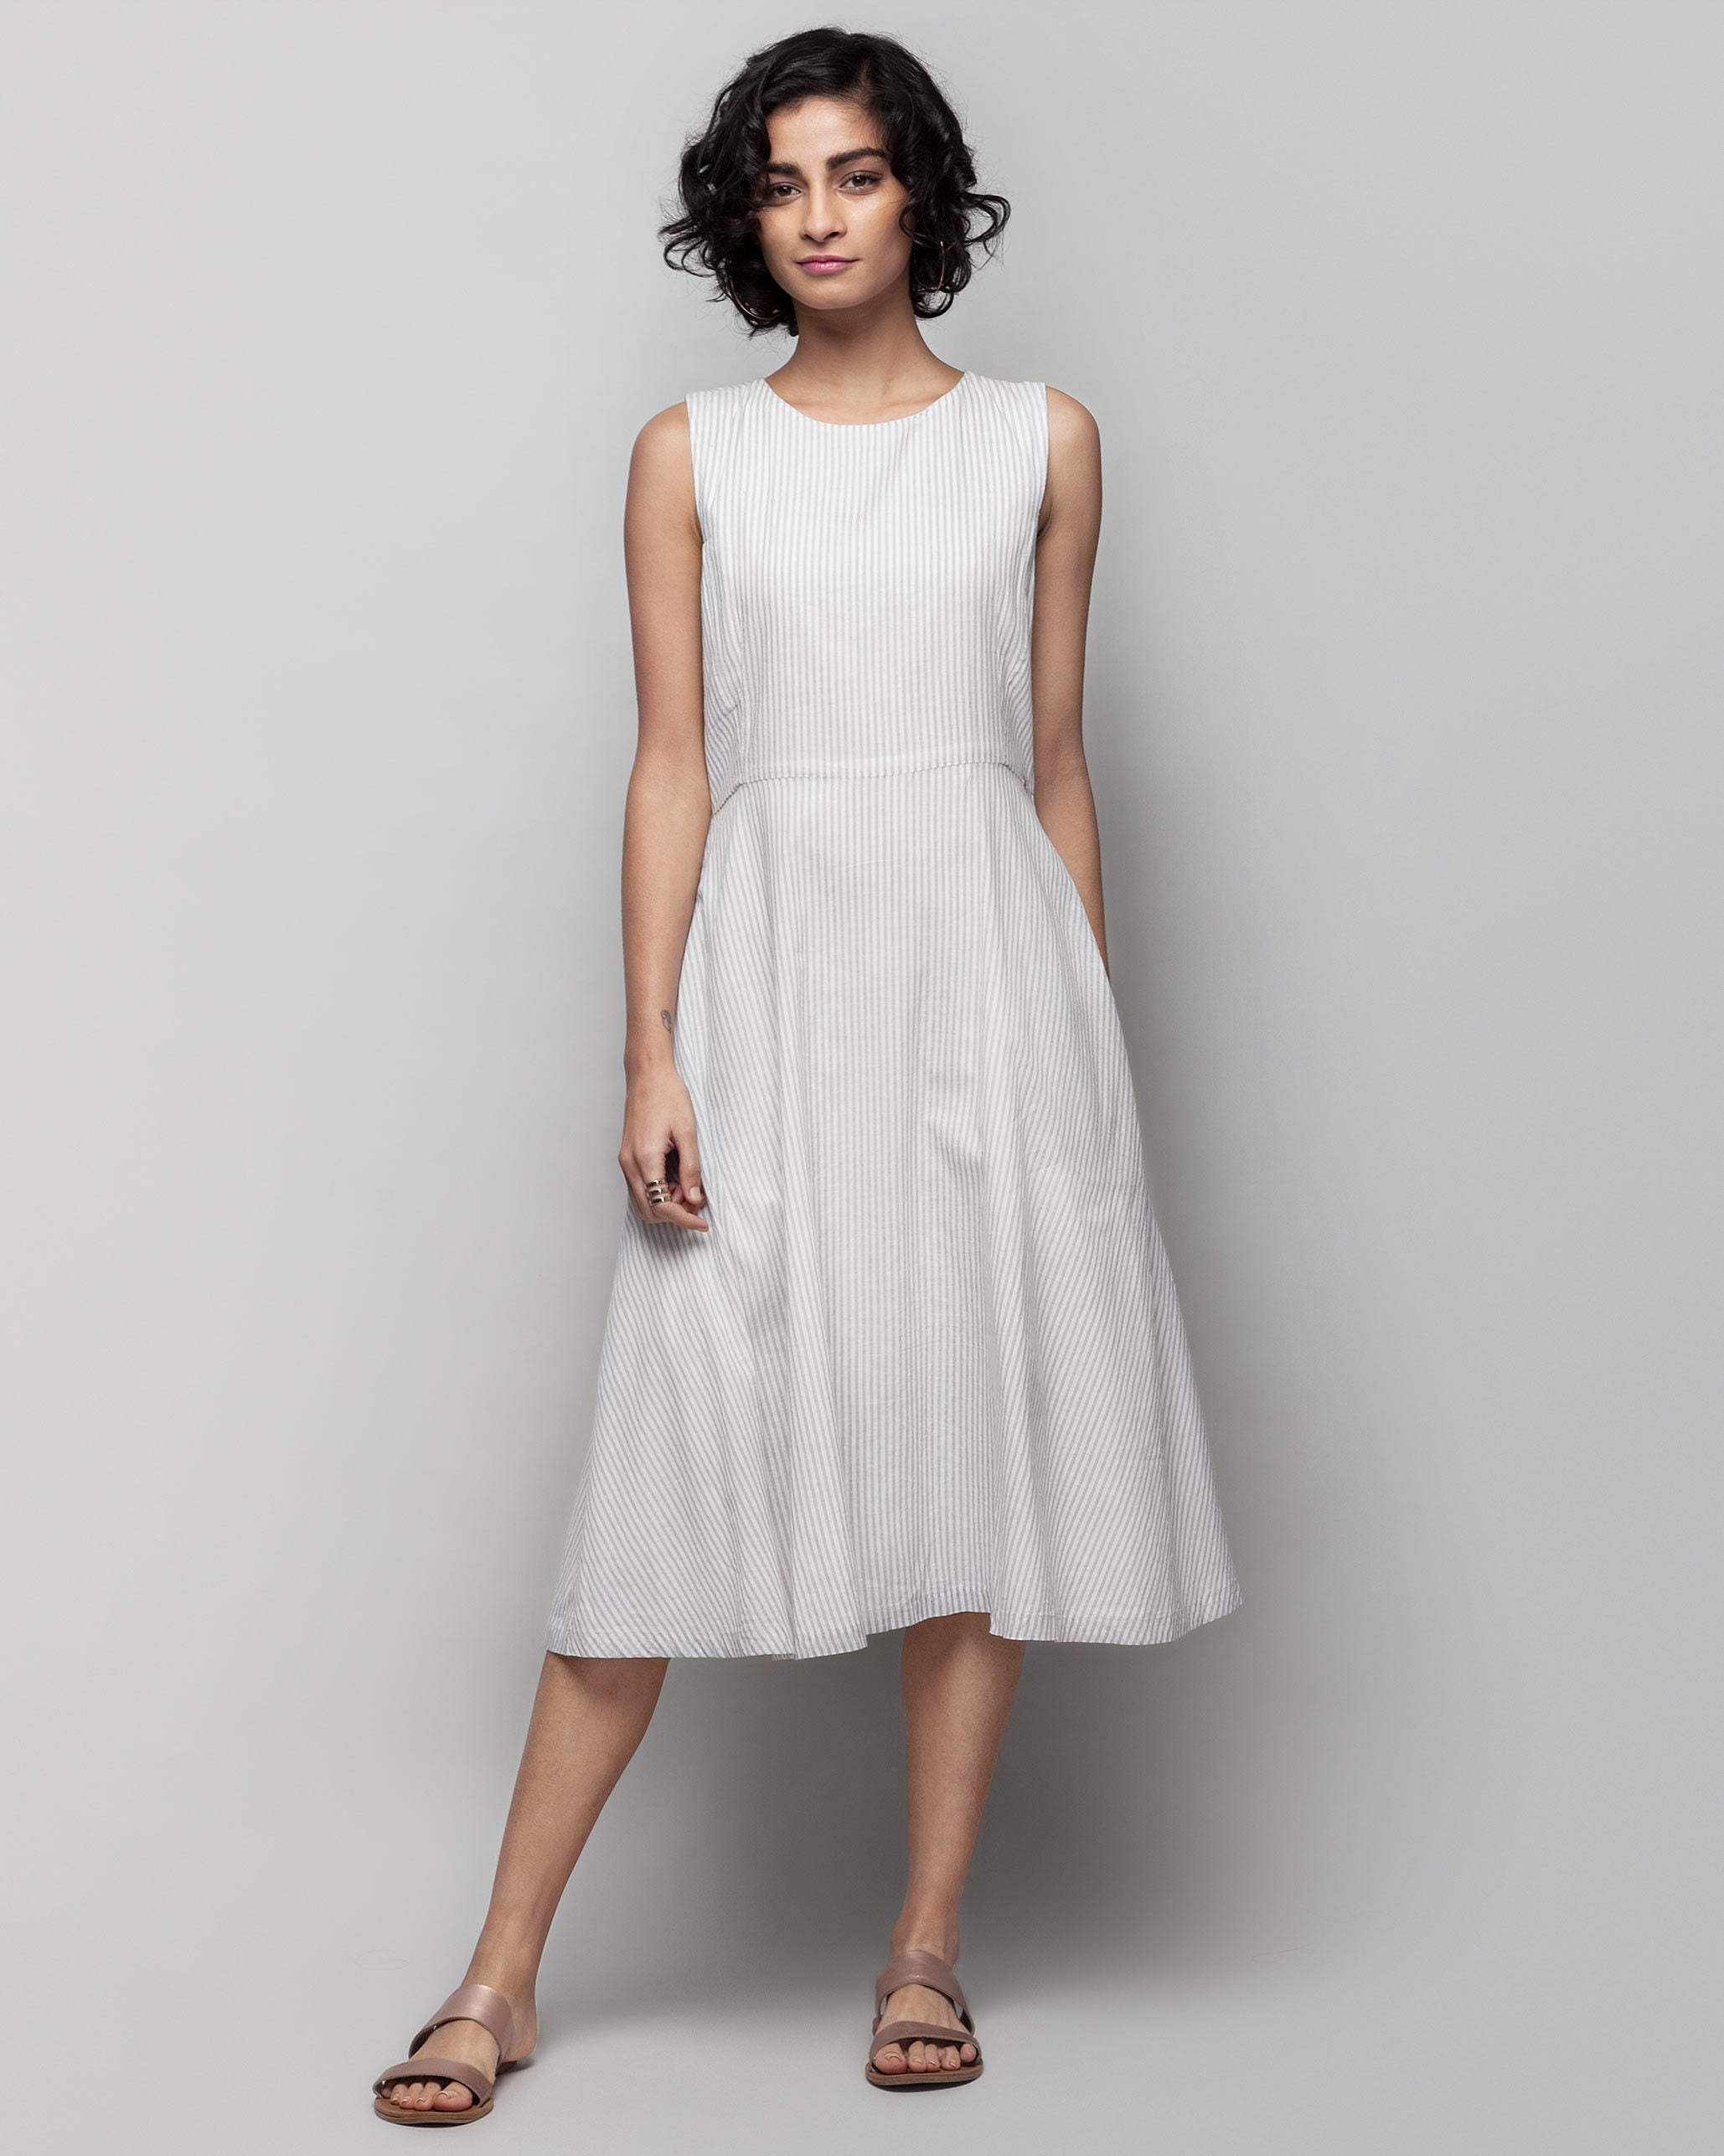 Yoroi Sleeveless Dress - Grey & White